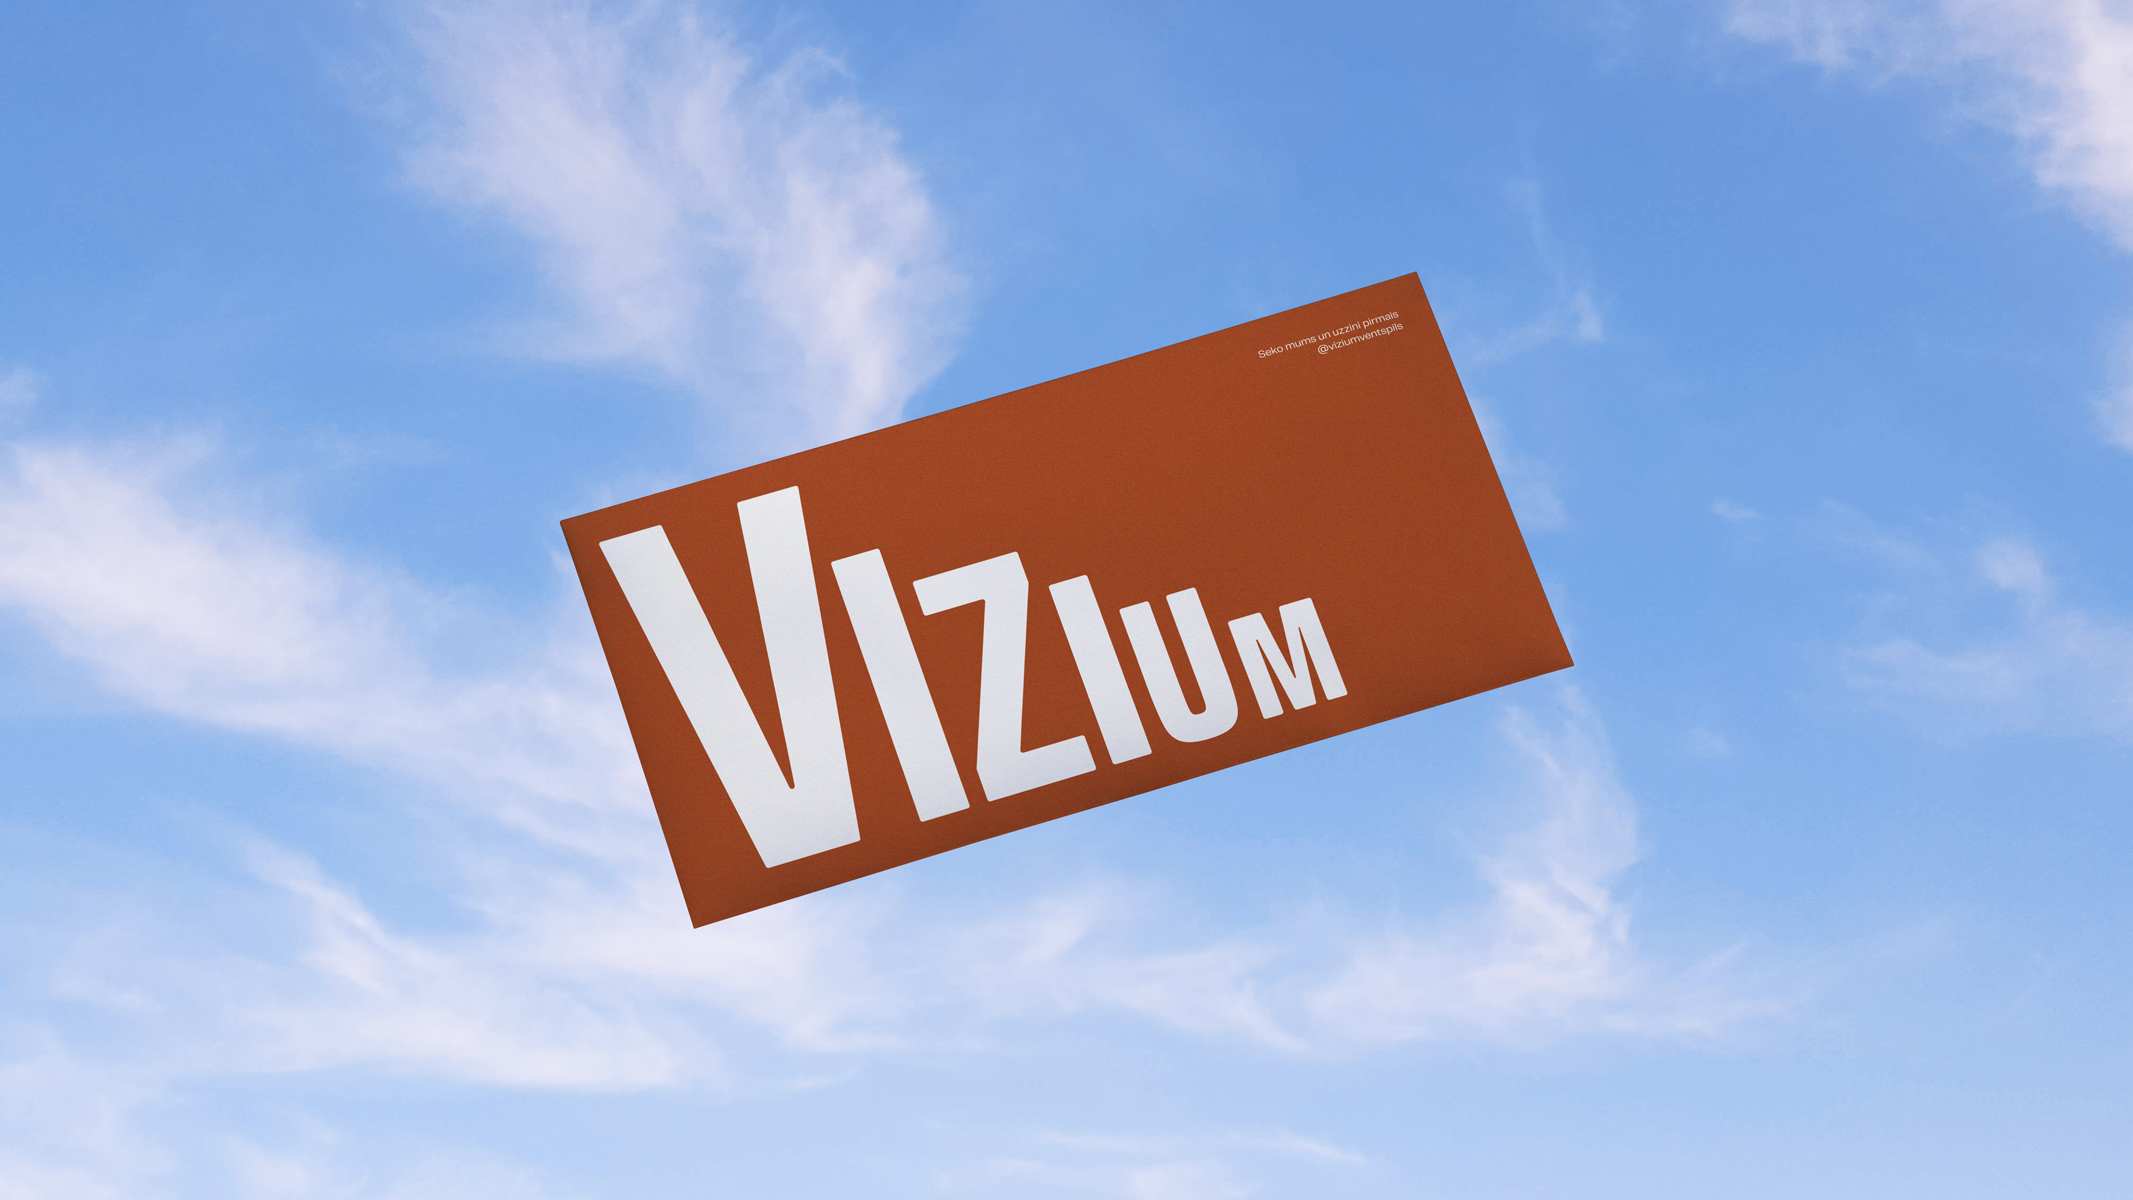 vizium_7